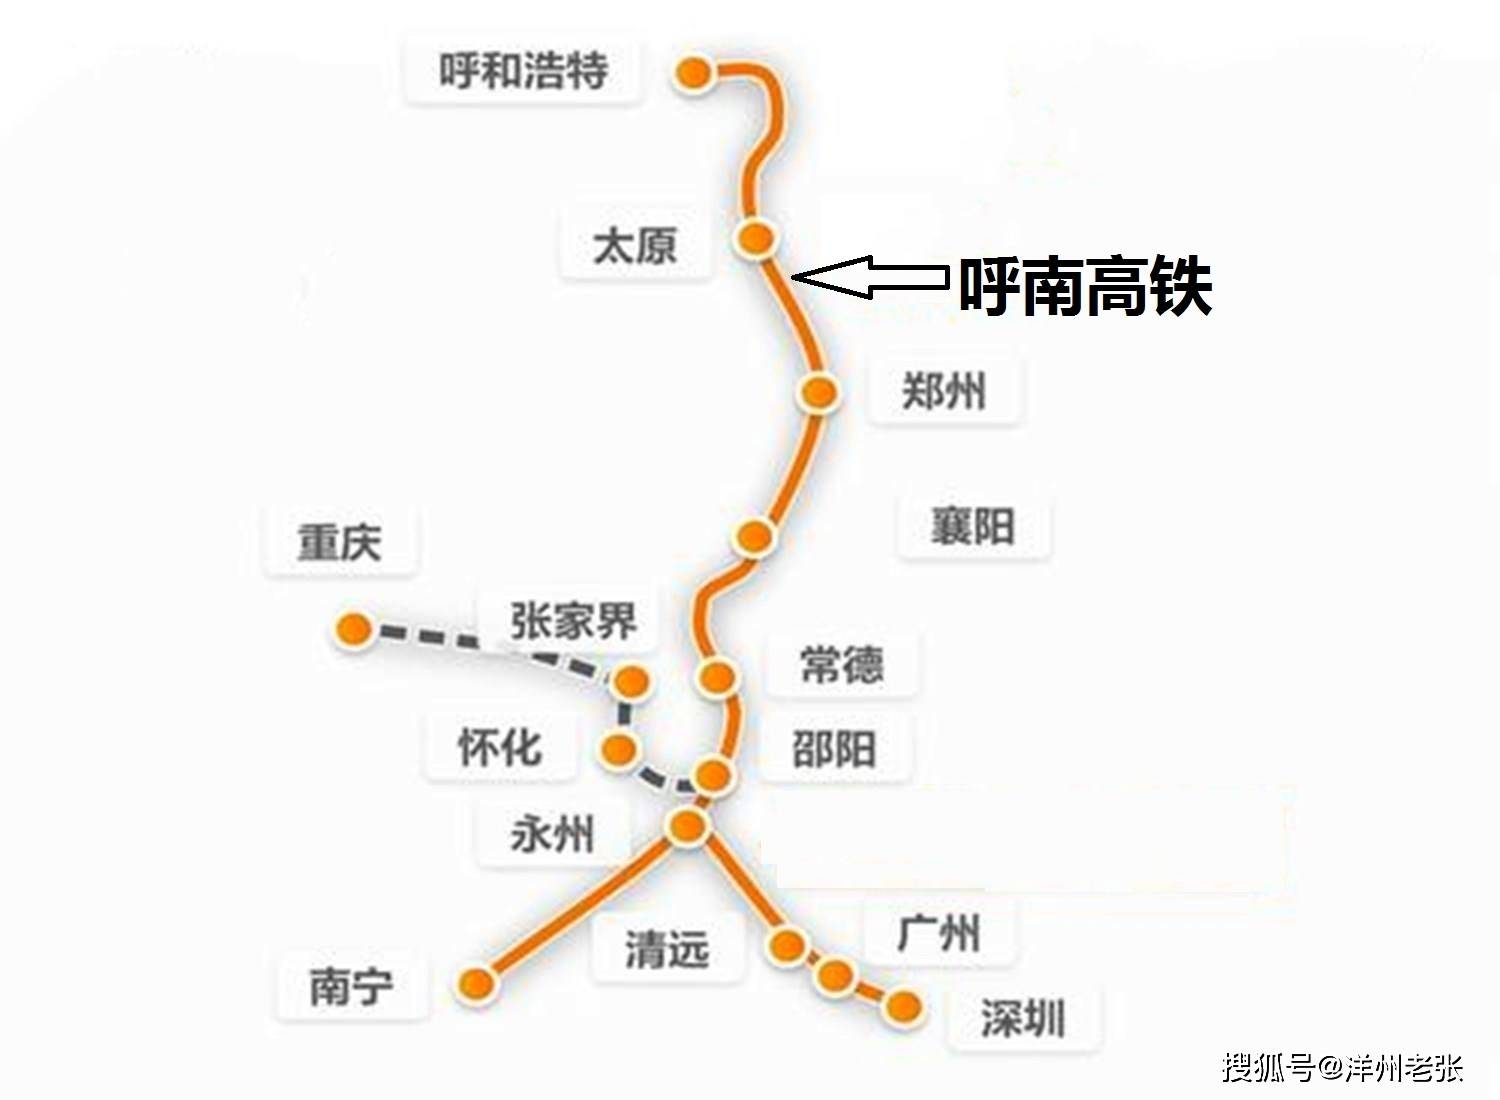 呼南高铁通道串联6省区,各段进展如何?最新动态给你答案